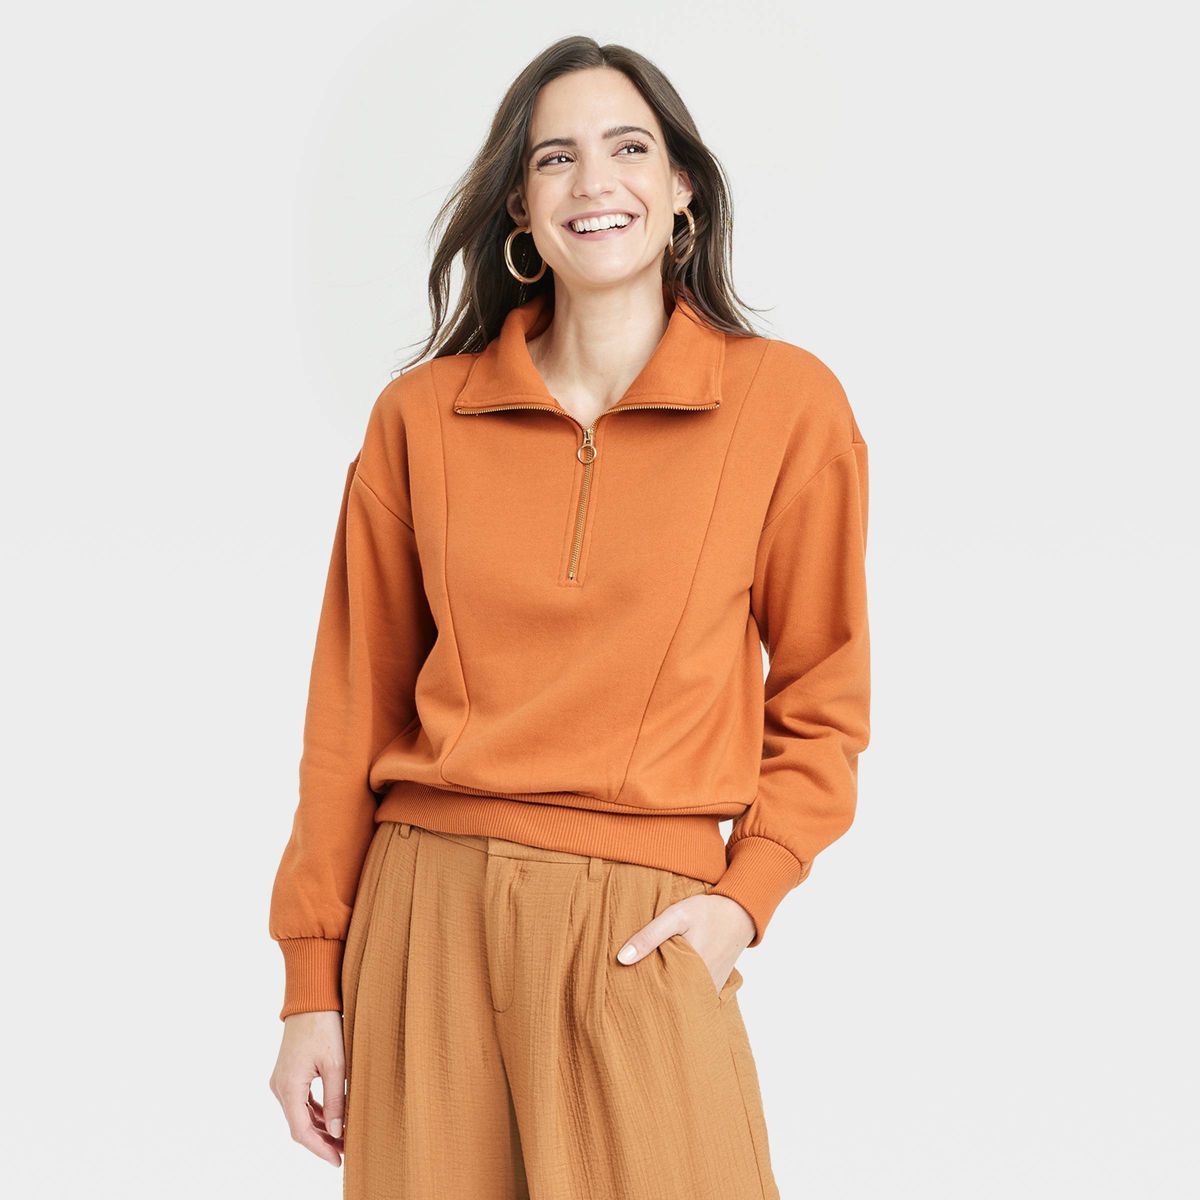 Women's Quarter Zip Sweatshirt - A New Day™ | Target